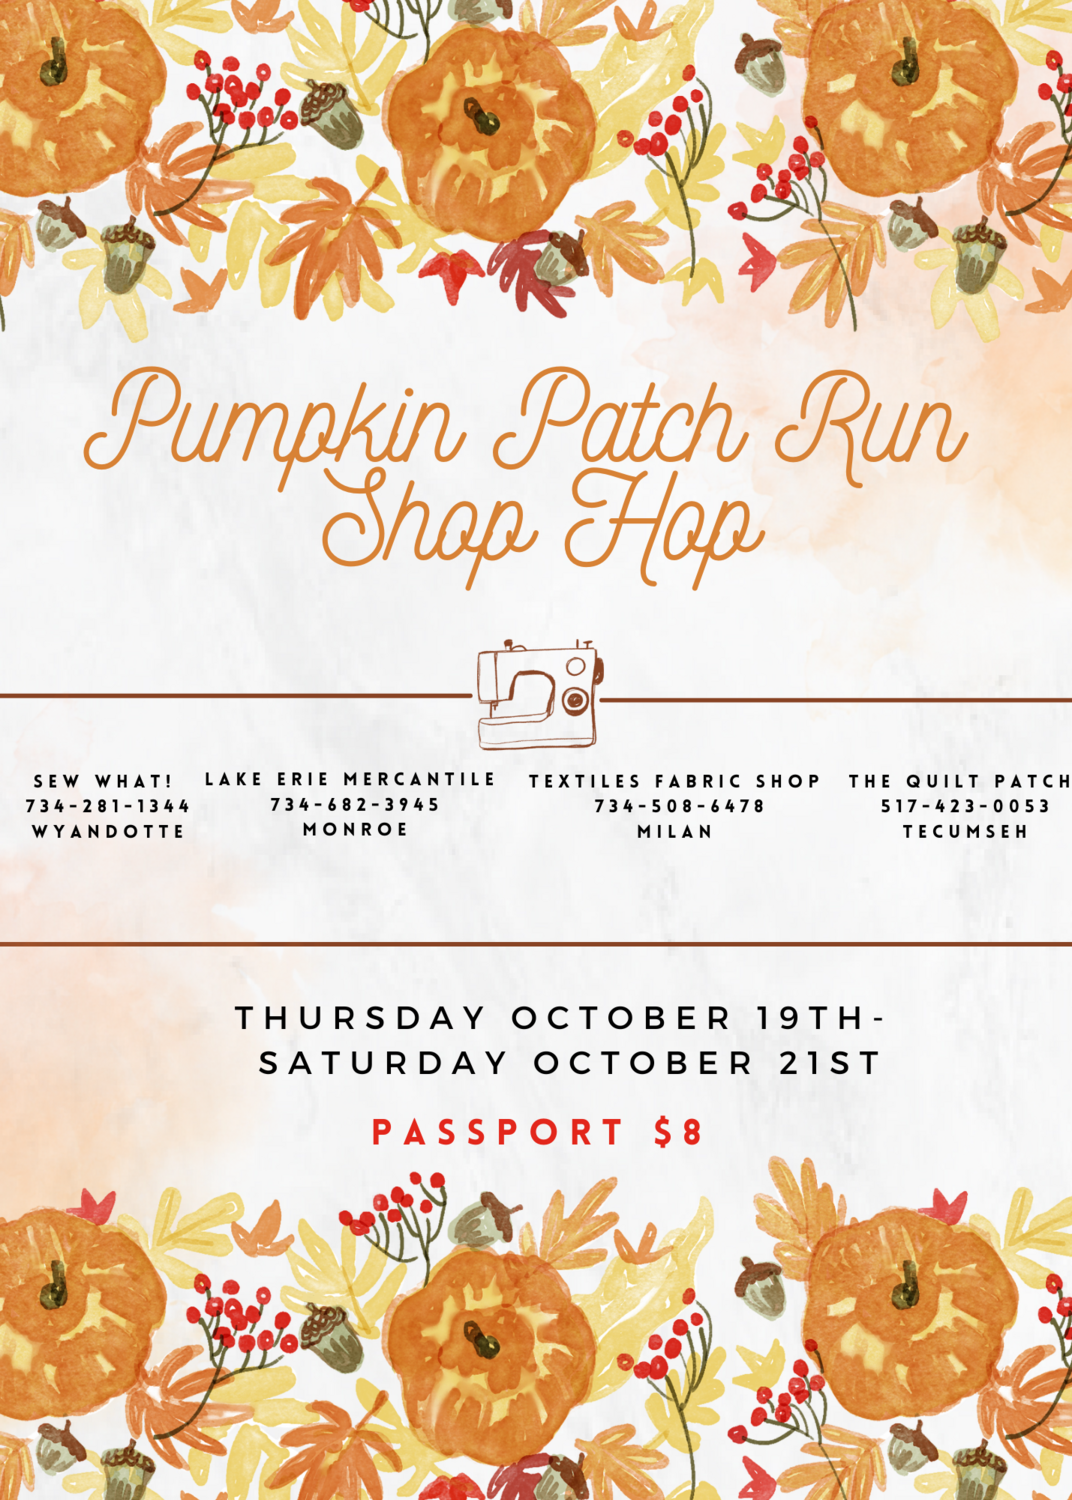 Pumpkin Patch Run Shop Hop